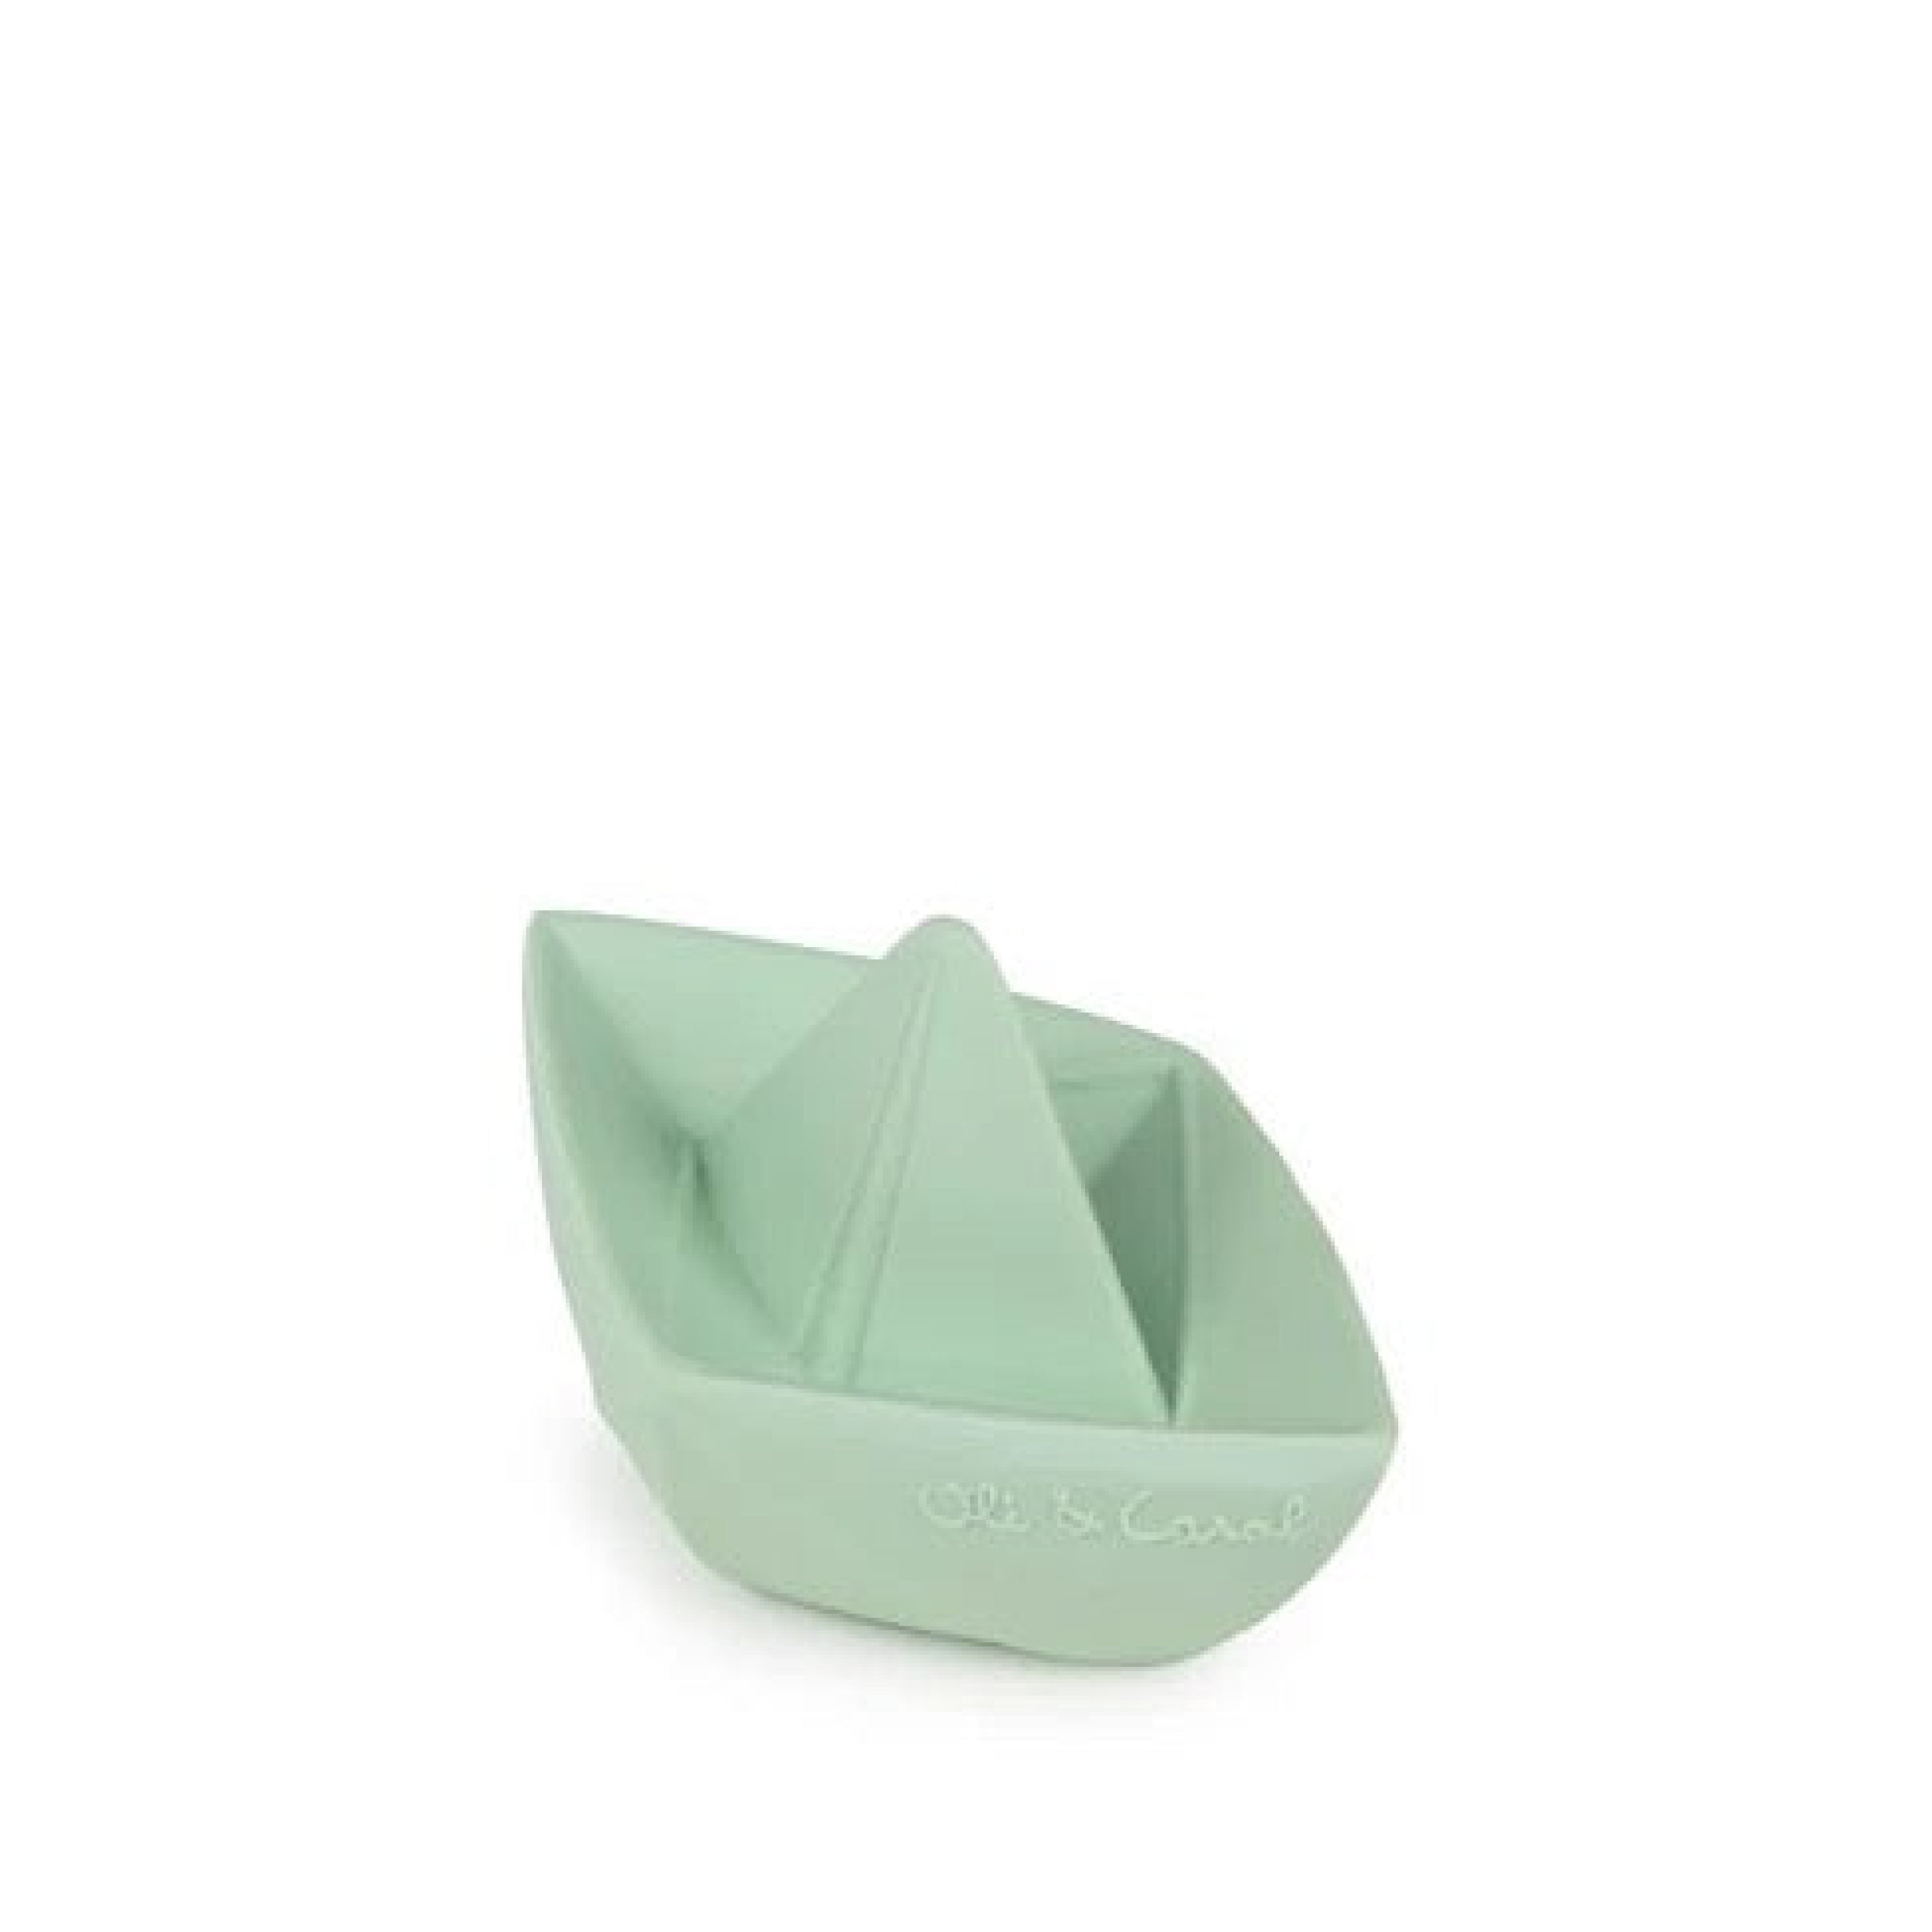 Baby Beißring Teether Oli & Carol Origami Boot in mint aus Naturkautschuk und von Hand bemalt mit speiseechten Farben - 100% natürlich von Oli und Carol bei kinder und konsorten Düsseldorf